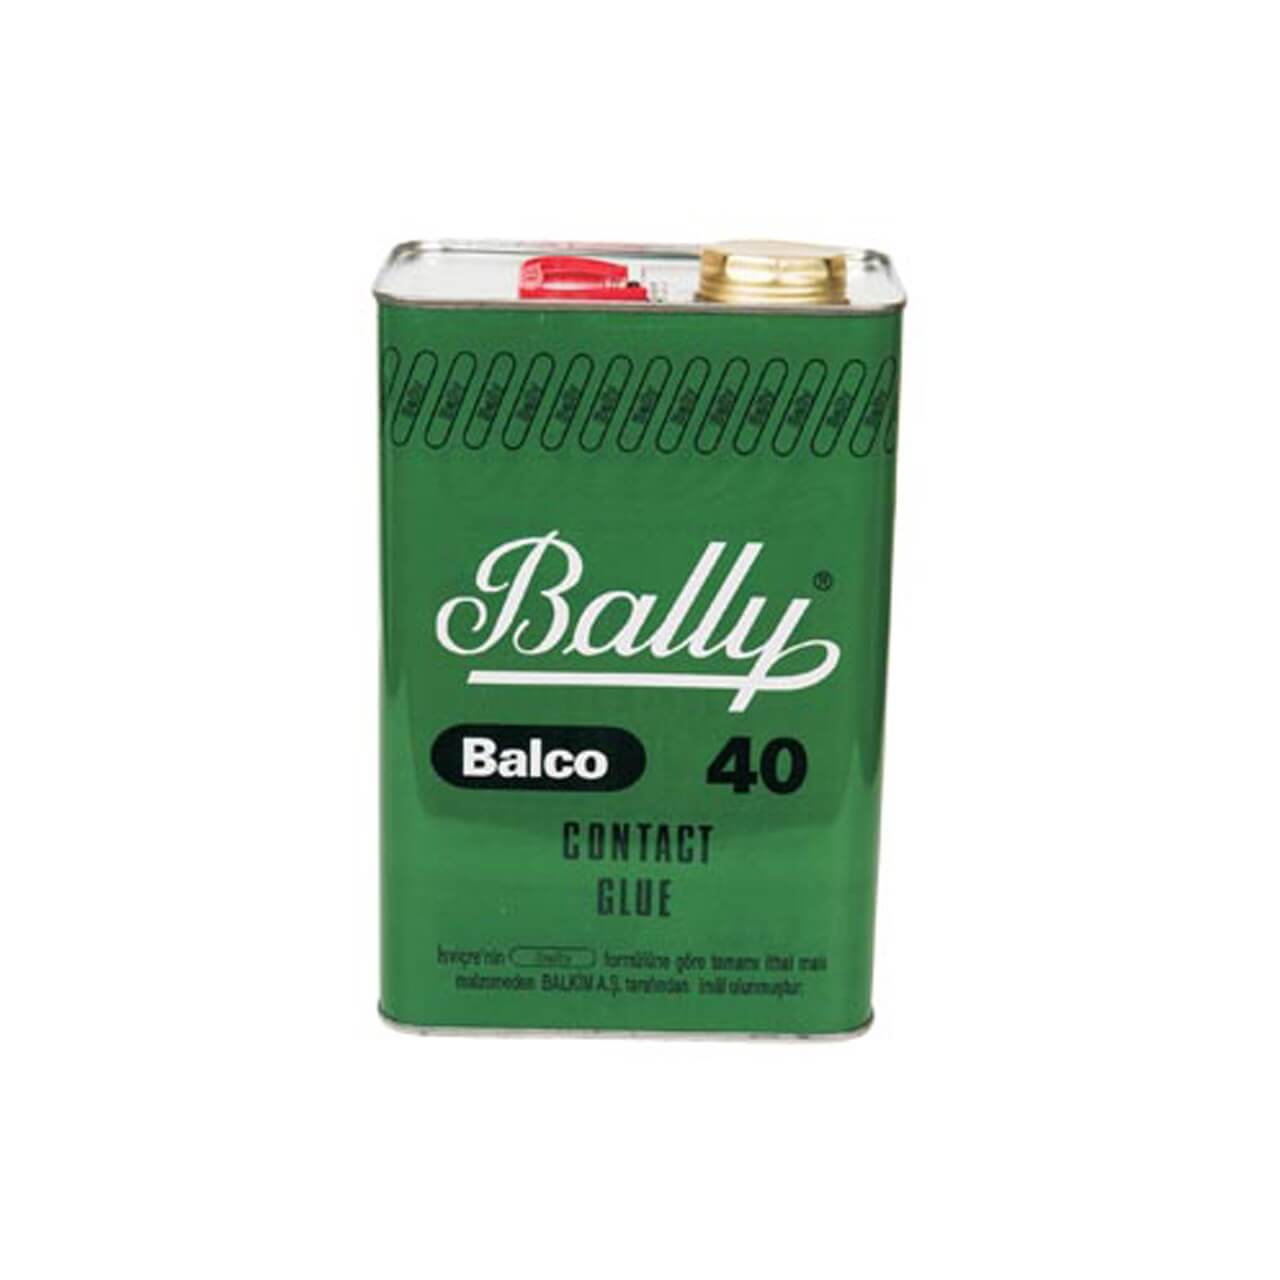 Bally Yapıştırıcı Balco B40 3KG - Filizjet